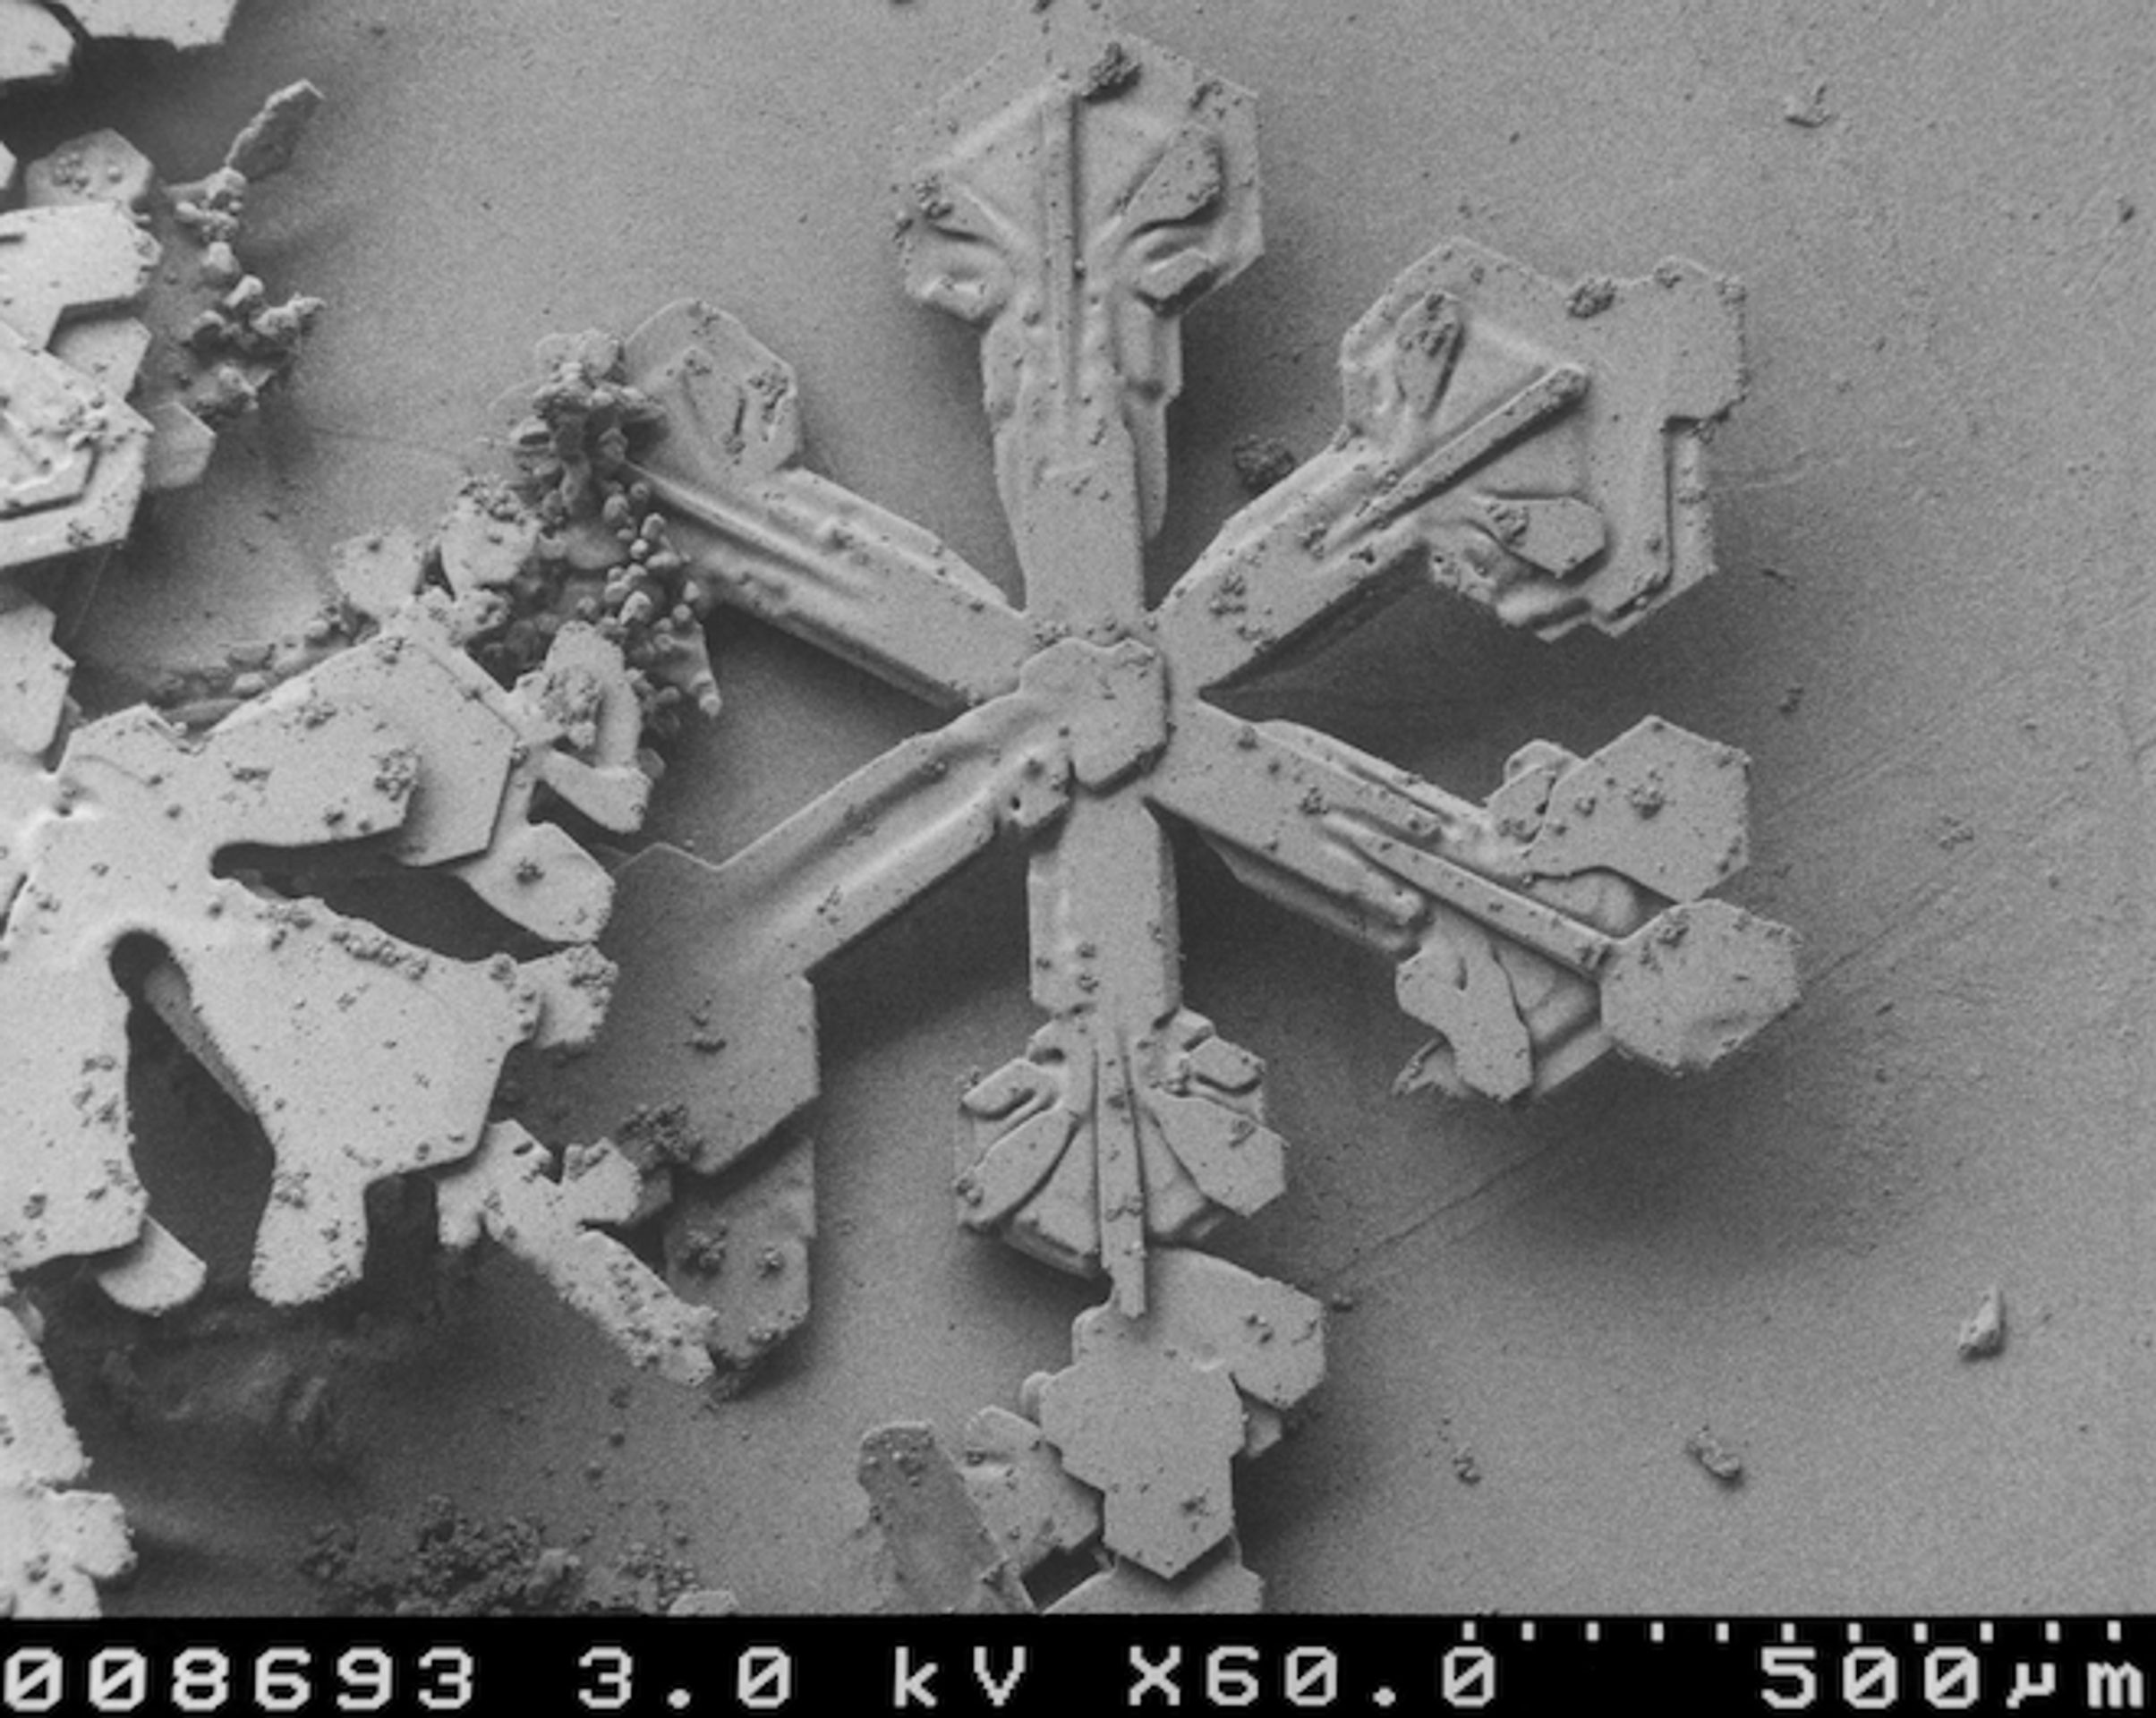 Vločka pod mikroskopem - 11 - GALERIE: Sněhová vločka pod mikroskopem (2/22)